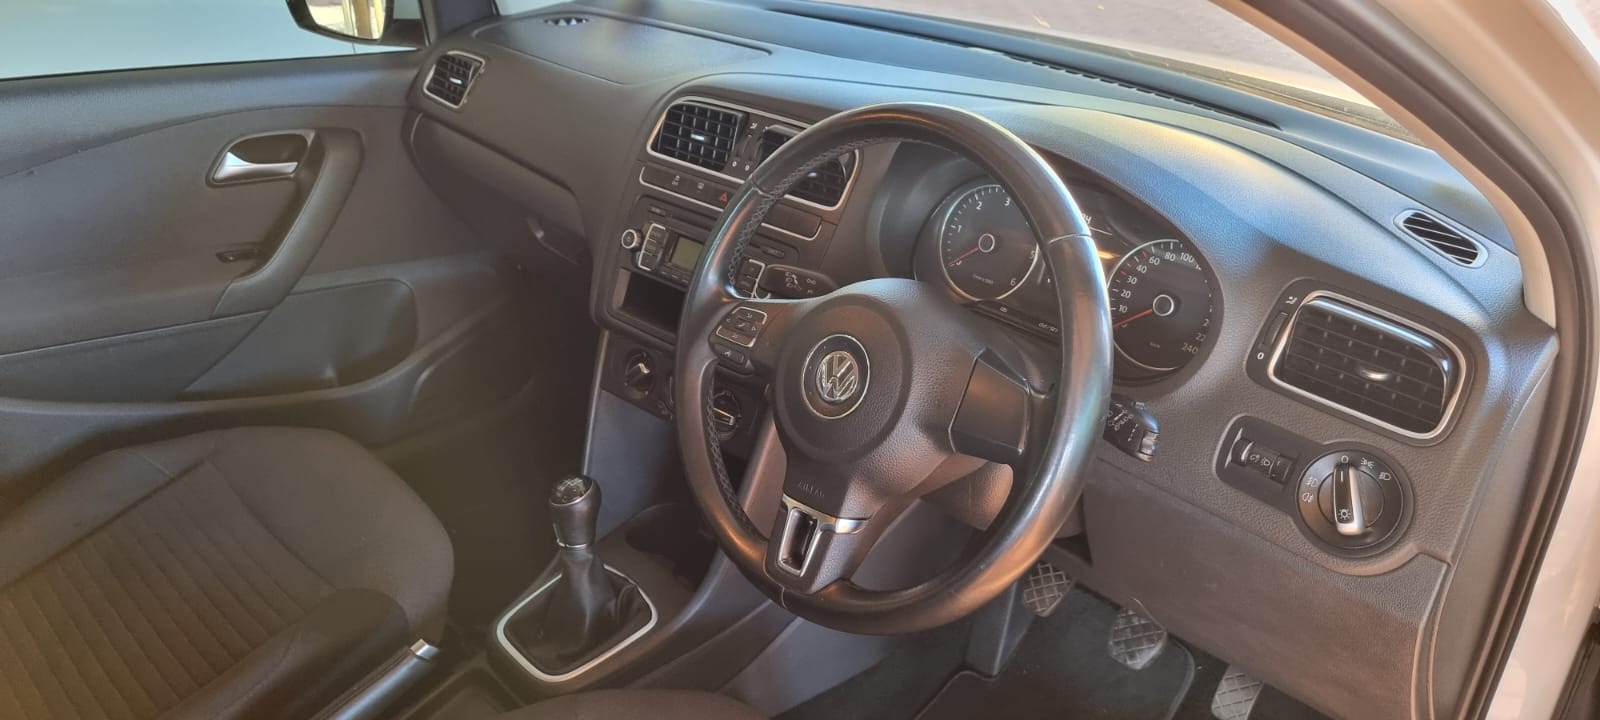 Volkswagen Polo 1.6 TDi Comfortline. 2013 